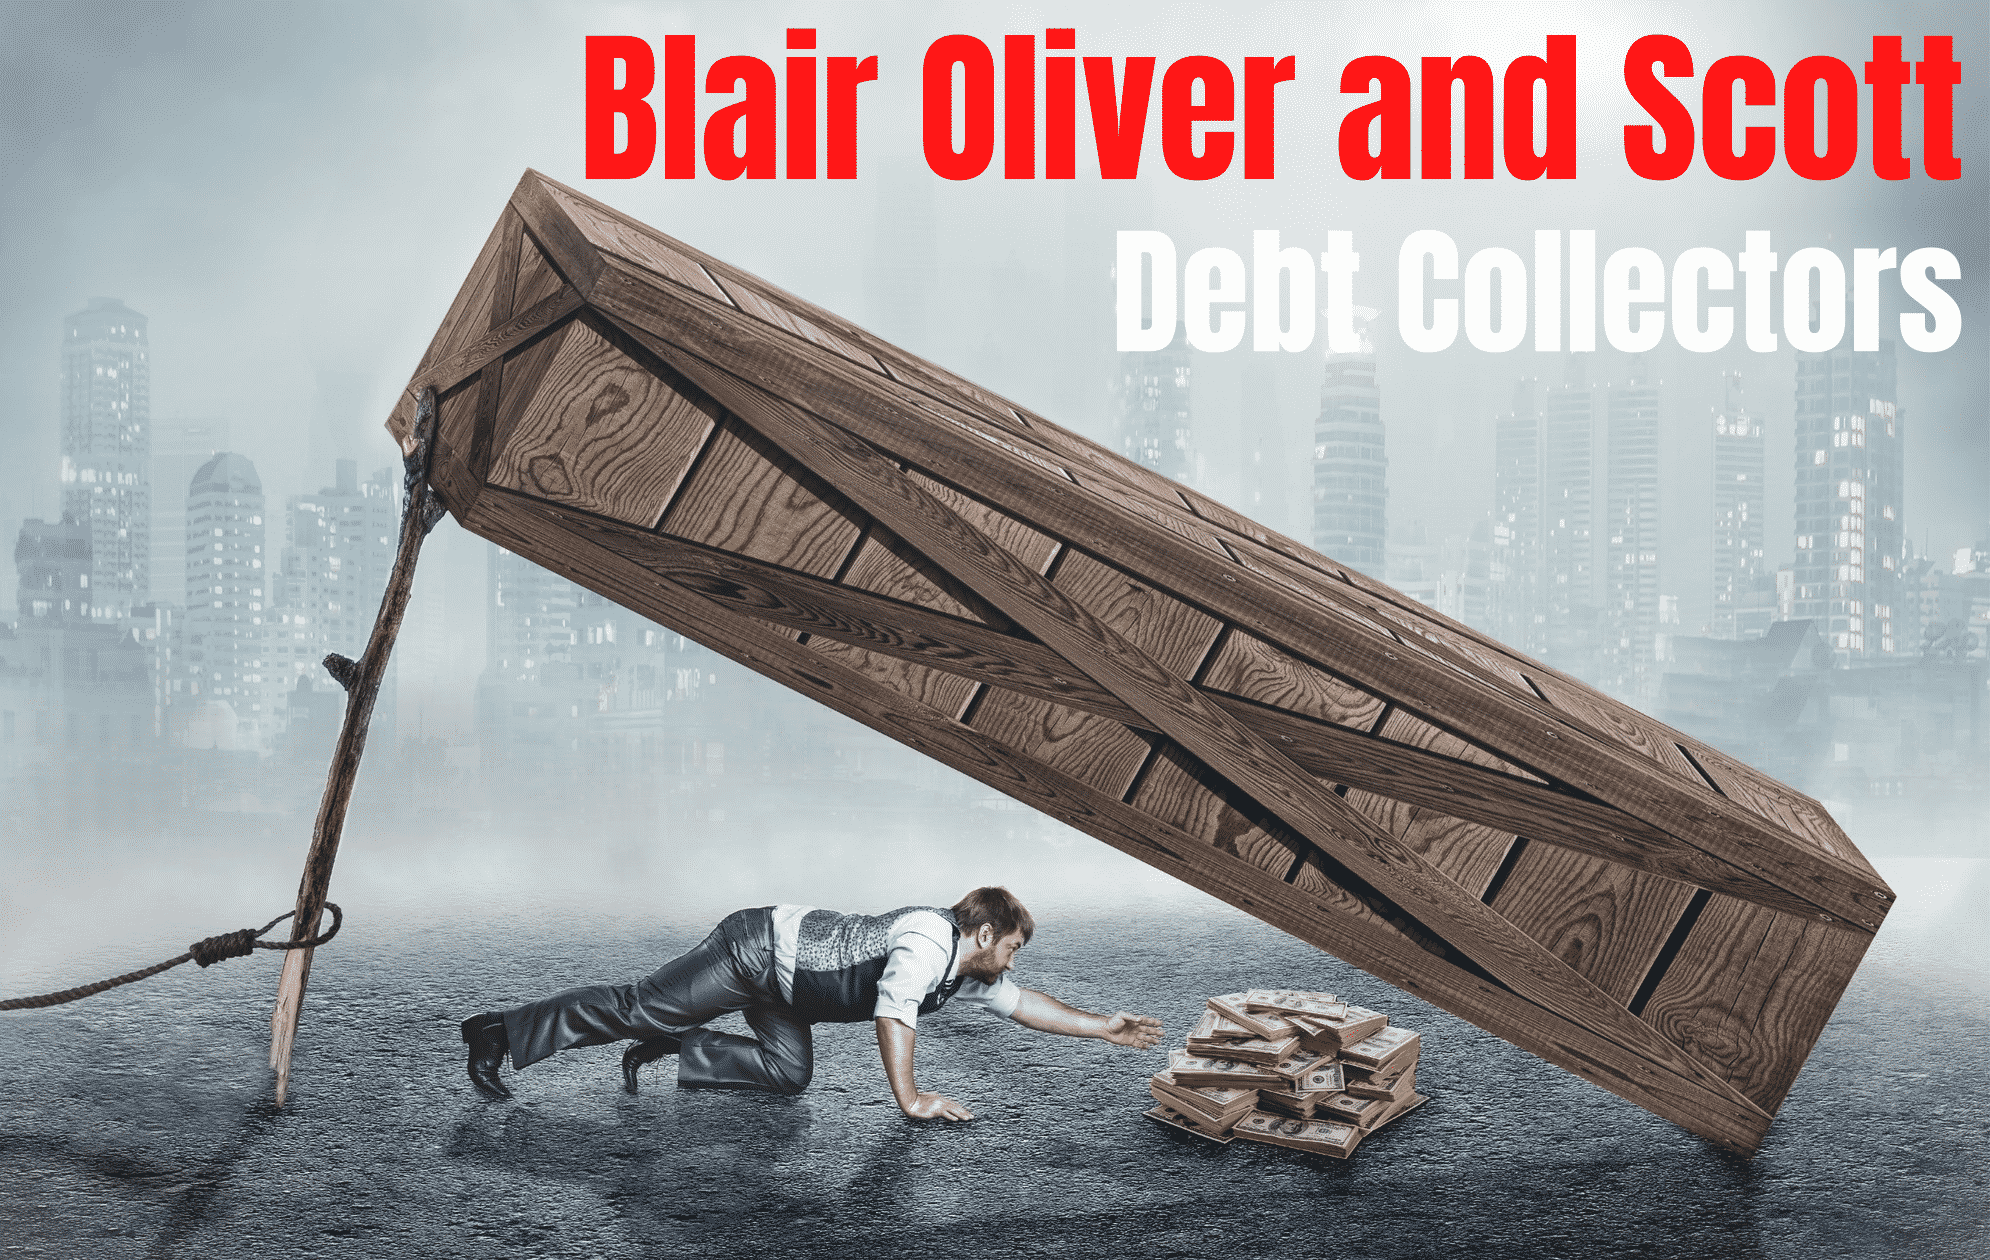 blair-oliver-and-scott-debt-collectors